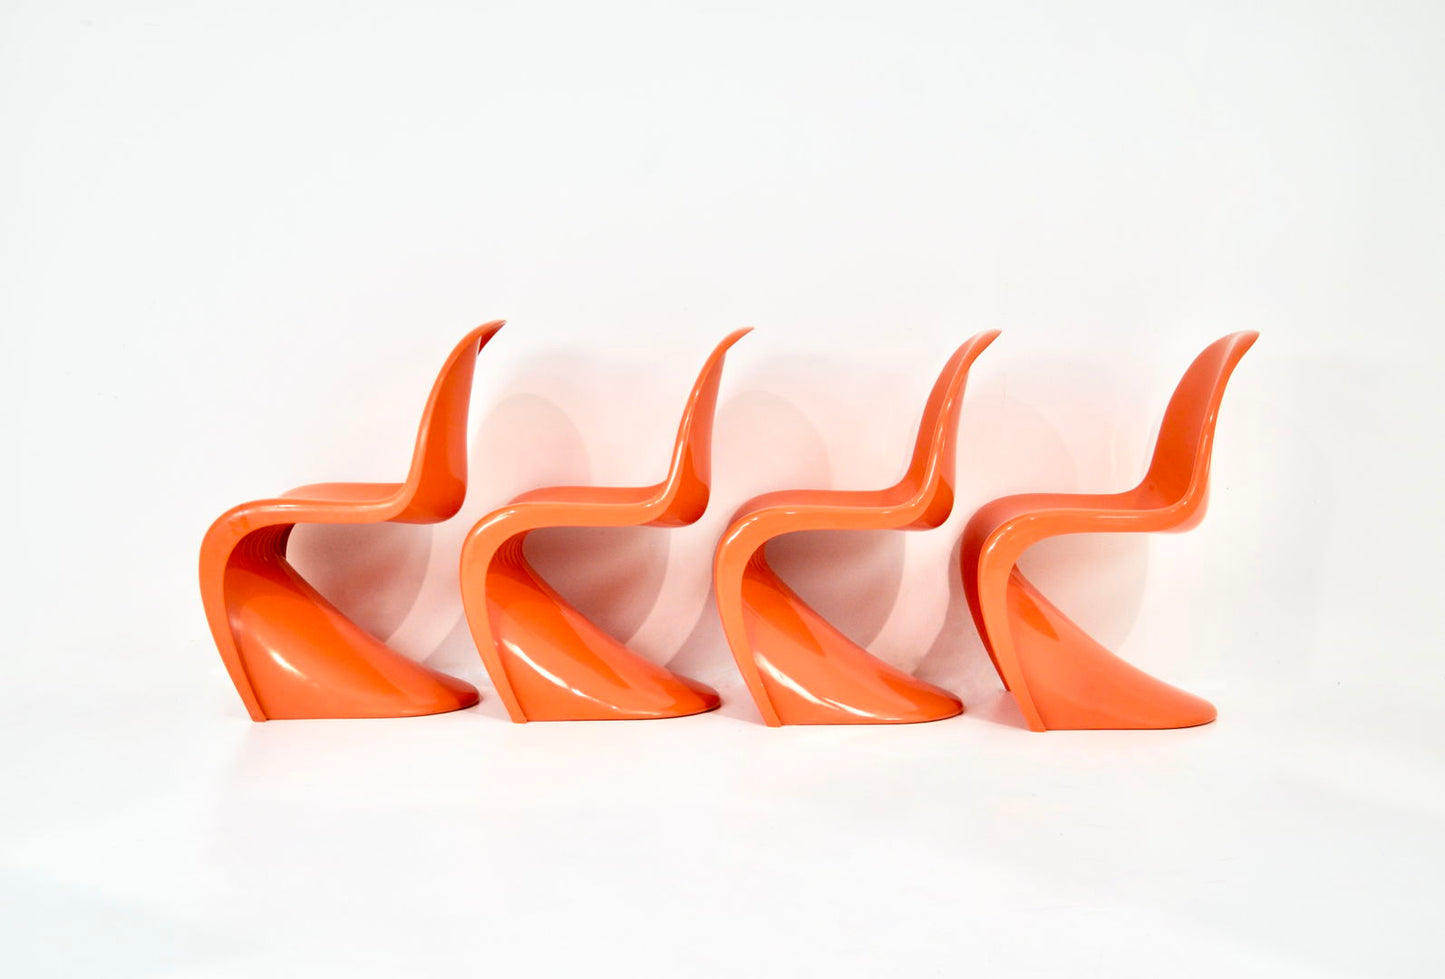 Panton chairs by Verner Panton for Herman Miller / Felhbaum, 1970s